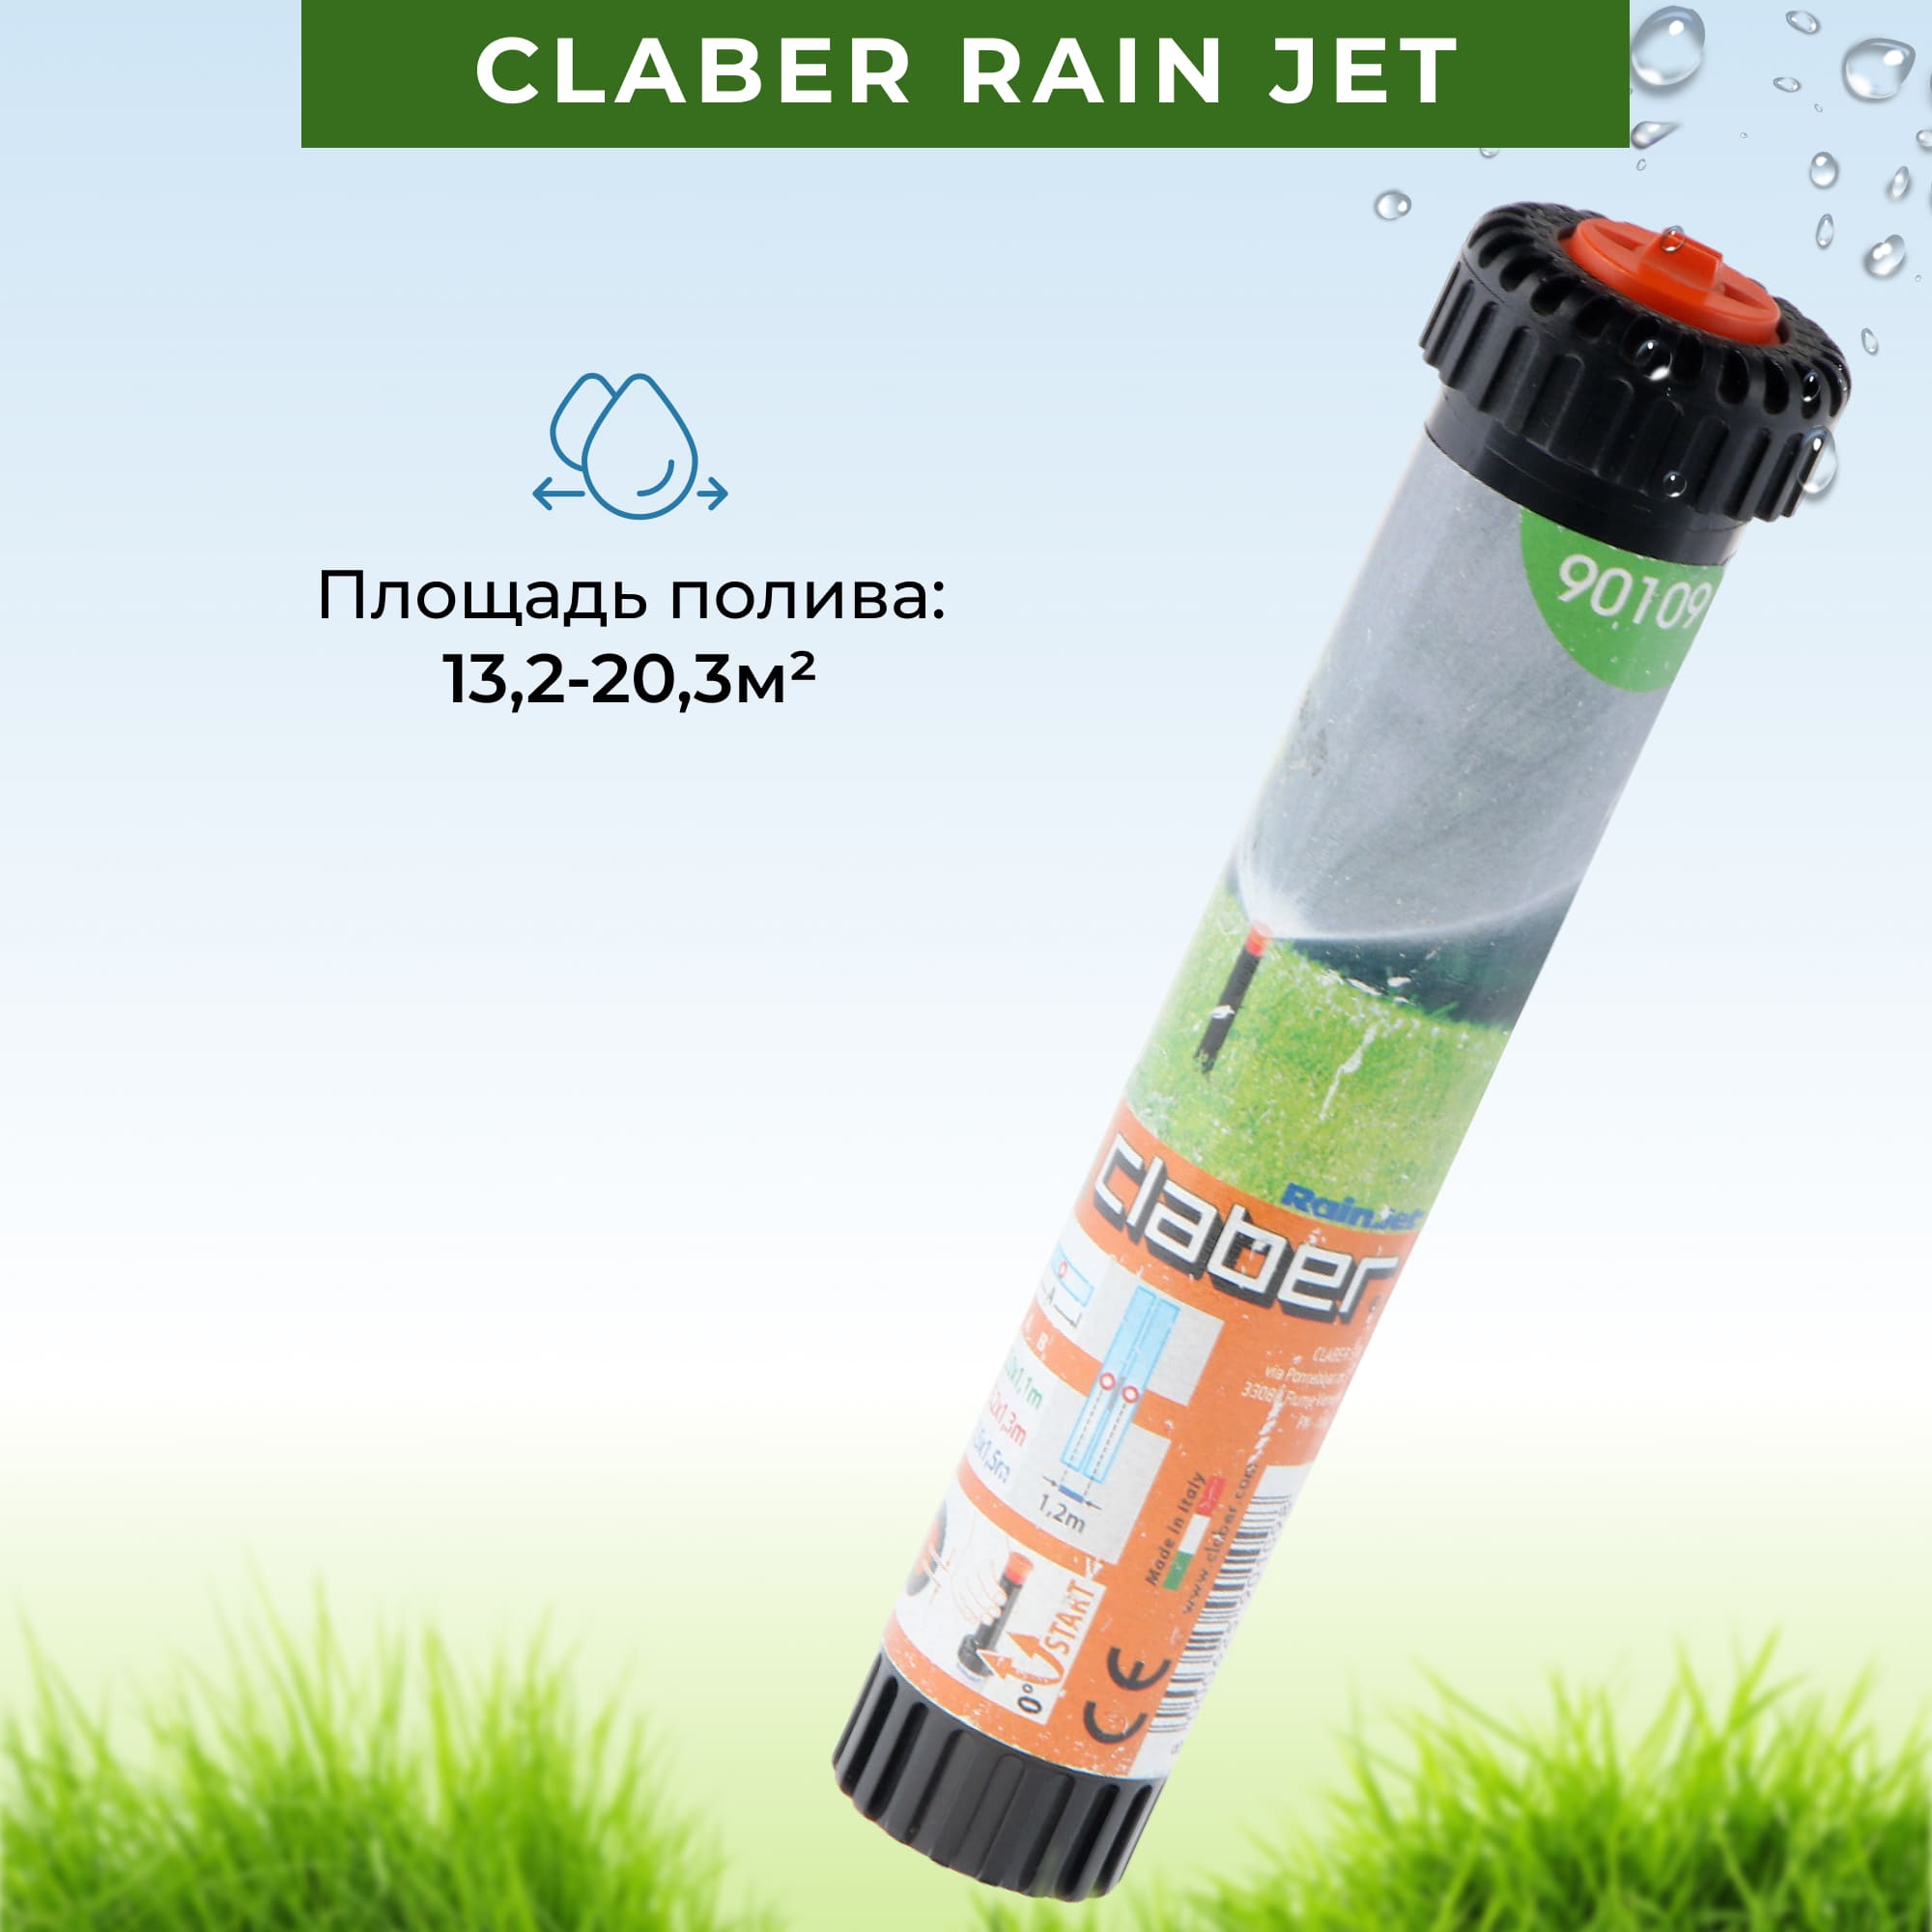 Дождеватель выдвижной Claber rain jet 90109, цвет черный - фото 3